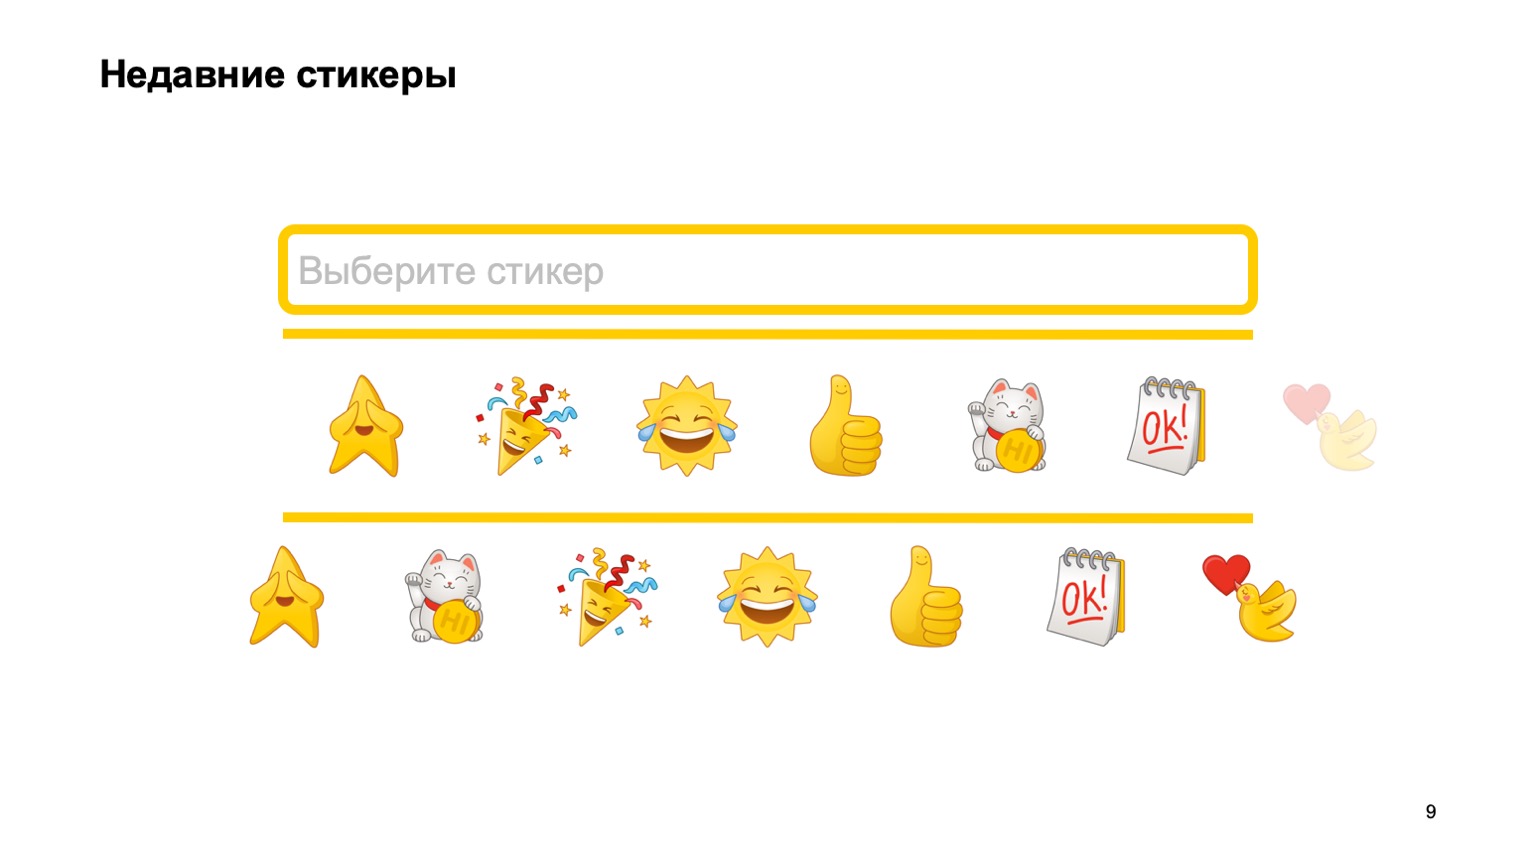 Мобильная разработка — это просто и скучно? Доклад Яндекса - 9